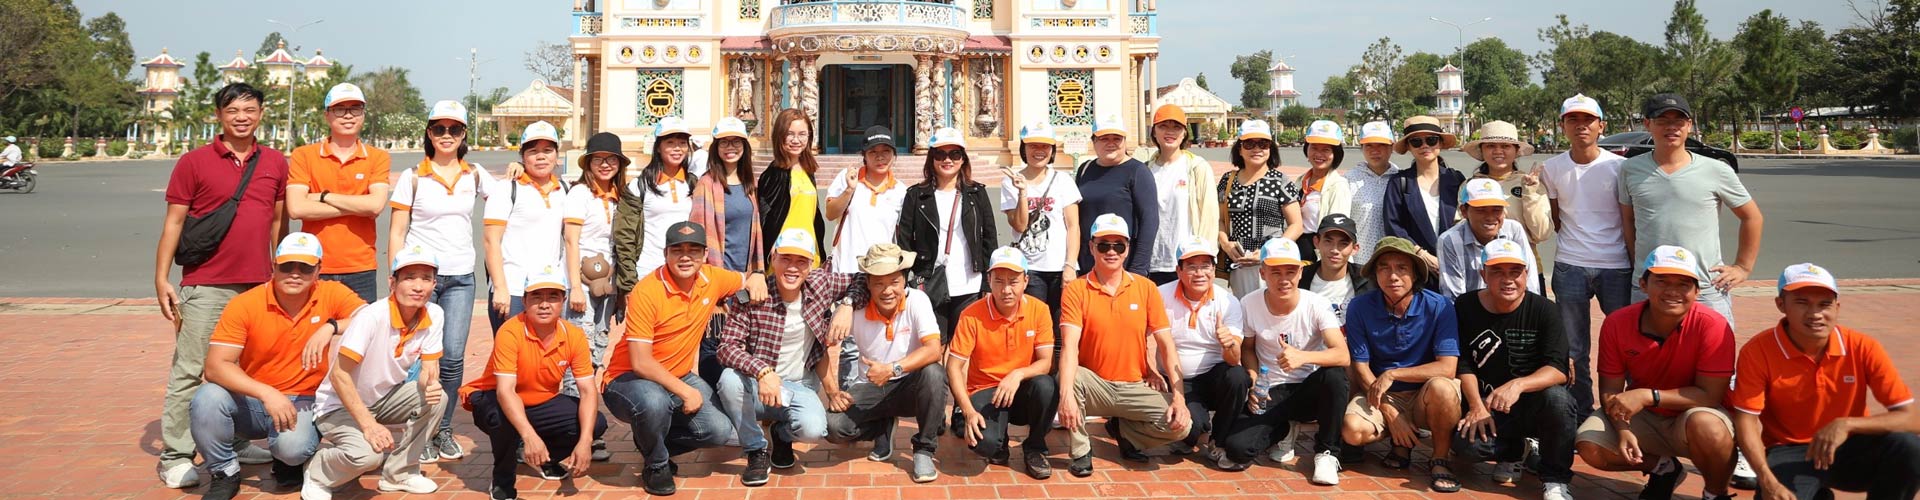 Tour du lịch khách đoàn leo núi Tây Ninh 3 ngày 2 đêm